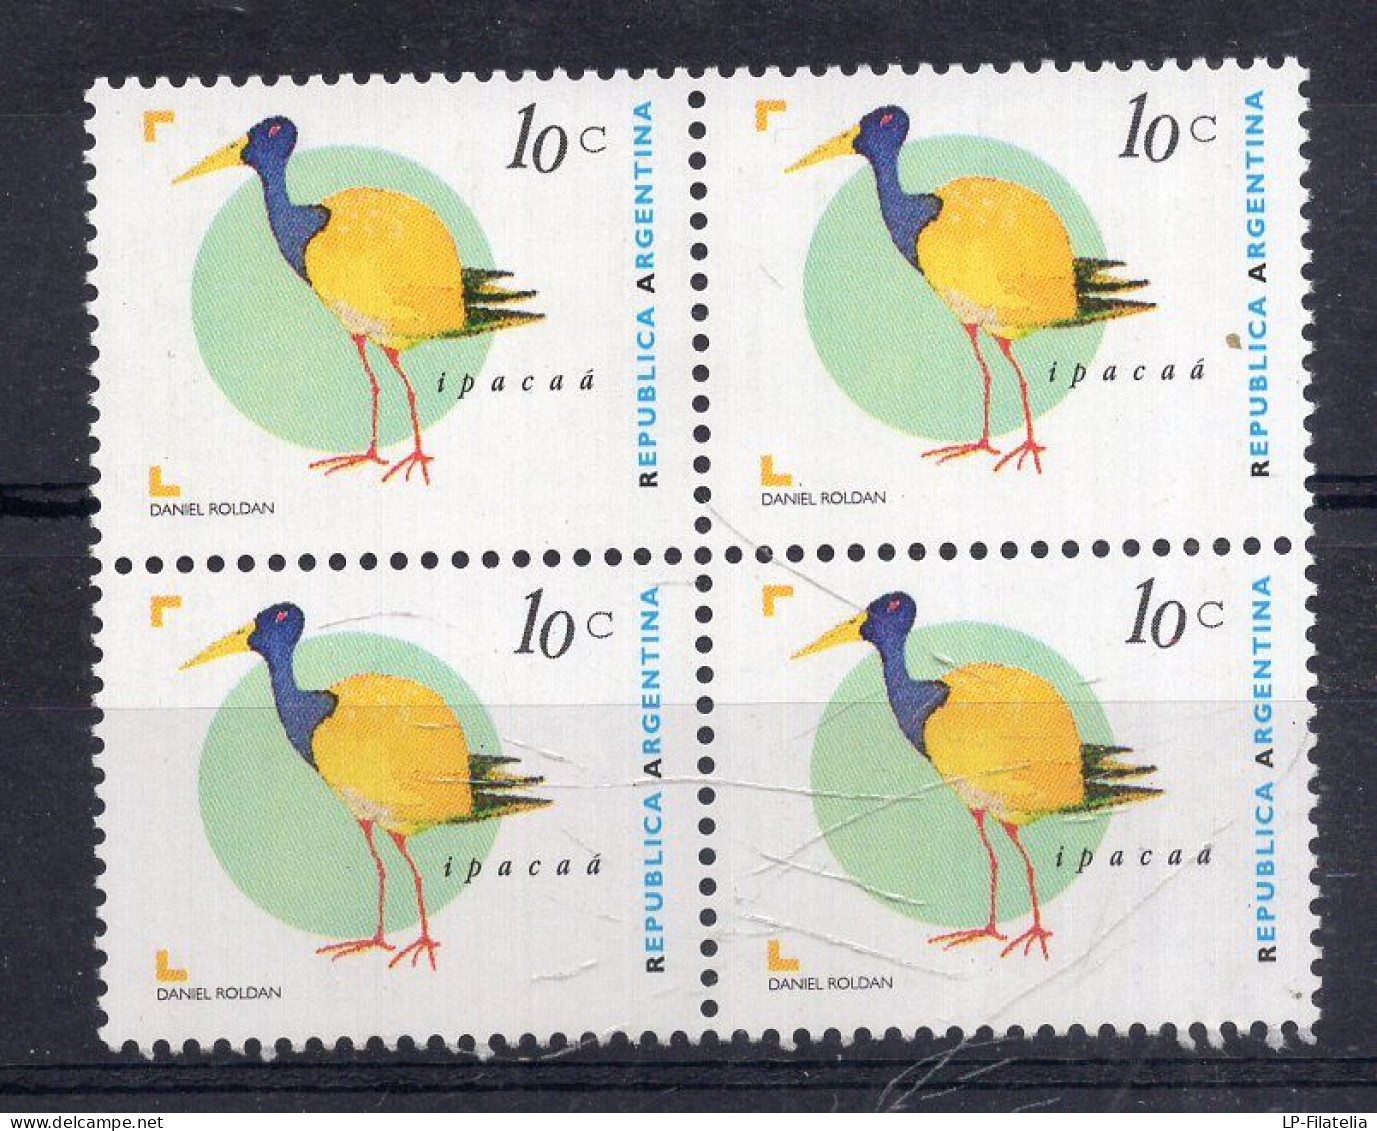 Argentina - 1995 - Ipacaá (Aramides Ypecaha) - Basic Serie - Birds - MNH - JG 2721 - Kraanvogels En Kraanvogelachtigen